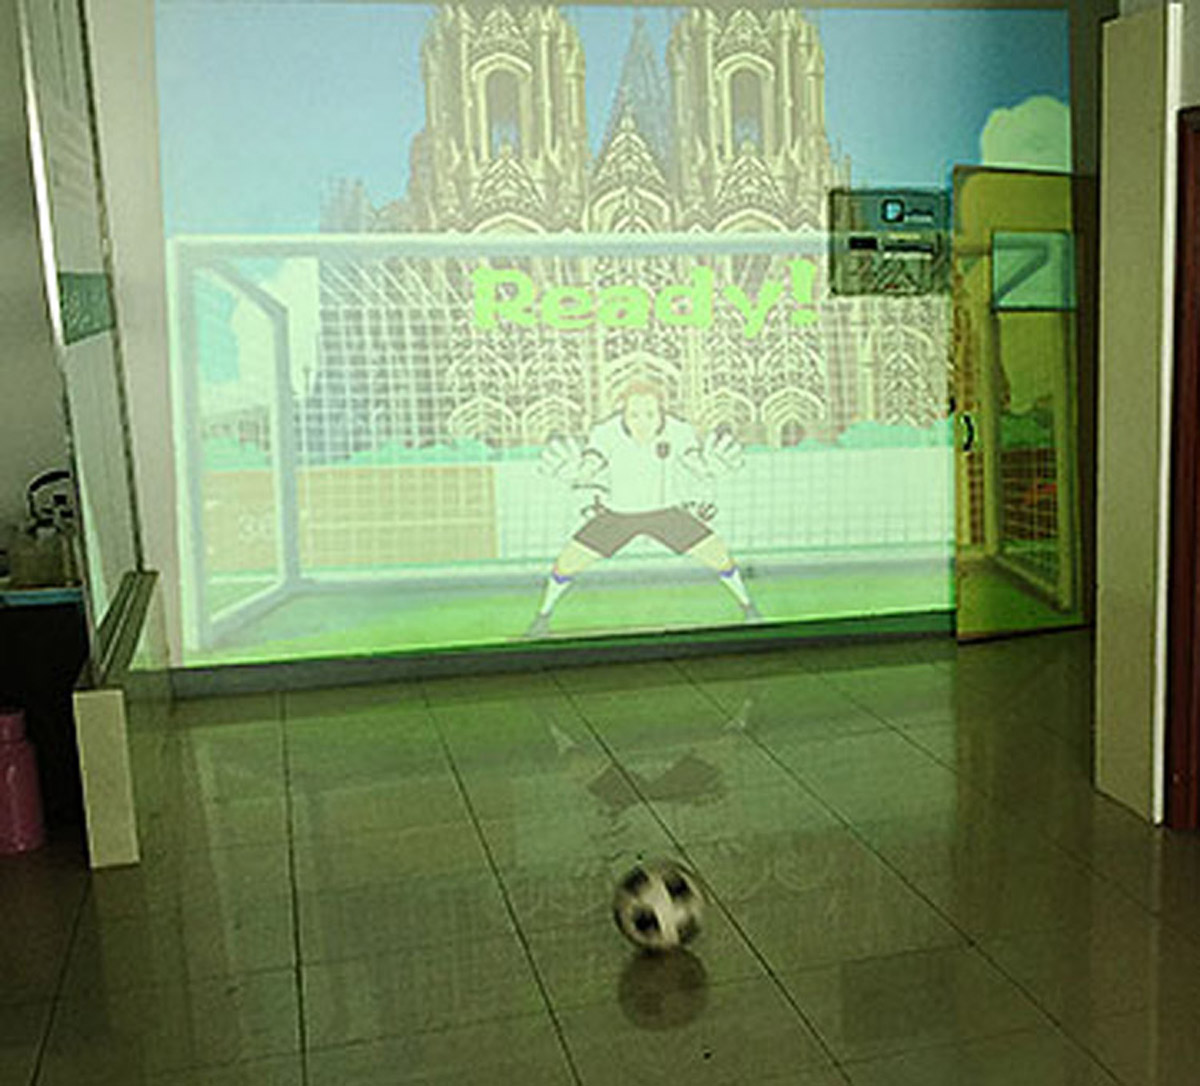 安全体验使用体感识别技术的虚拟足球射门.jpg